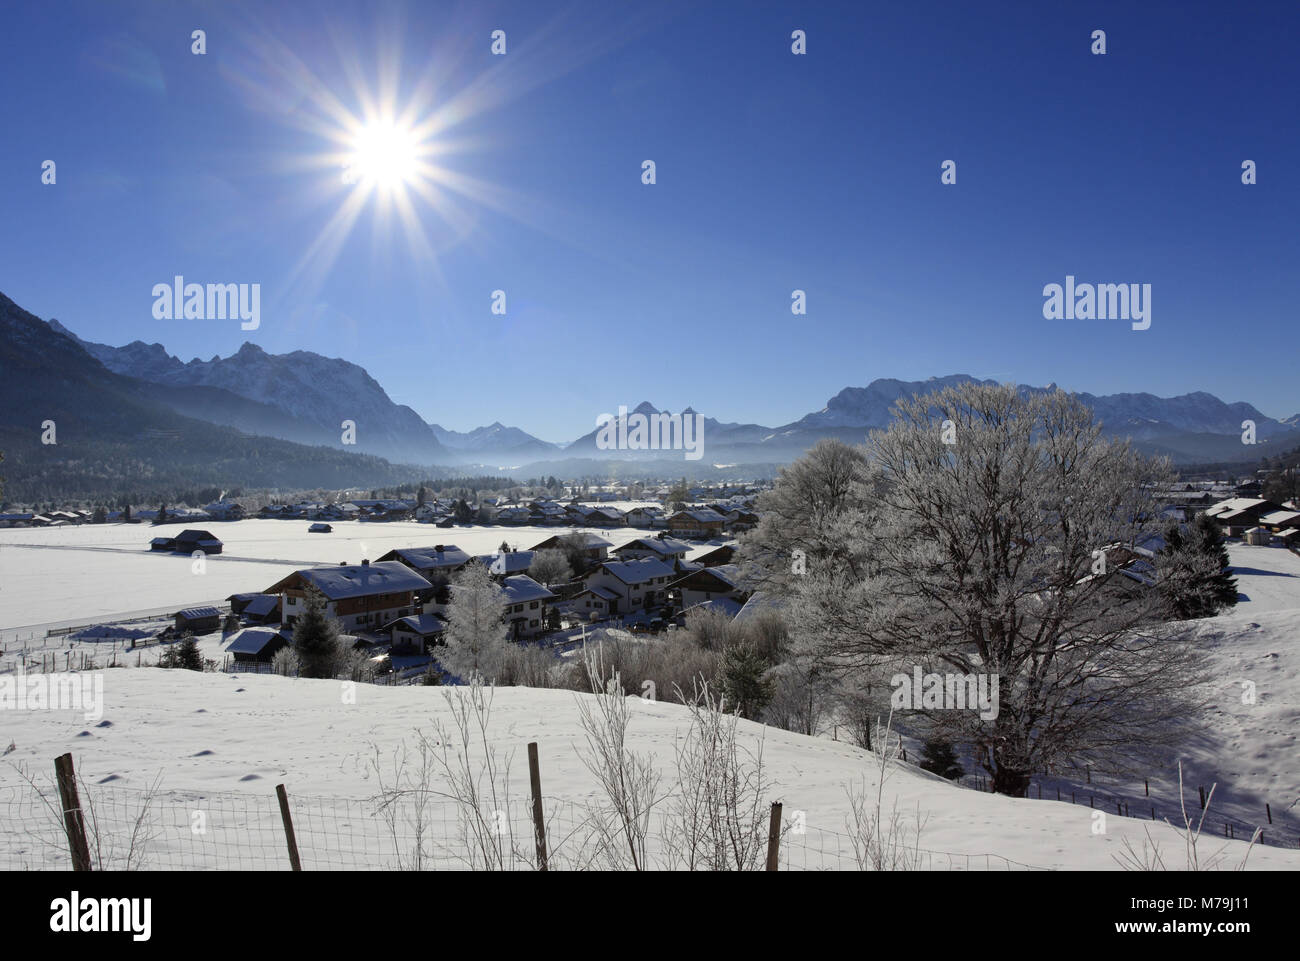 Germany, Bavaria, Upper Bavaria, Werdenfelser Land (region), Wallgau, Karwendel mountain range, Wetterstein Range, Stock Photo